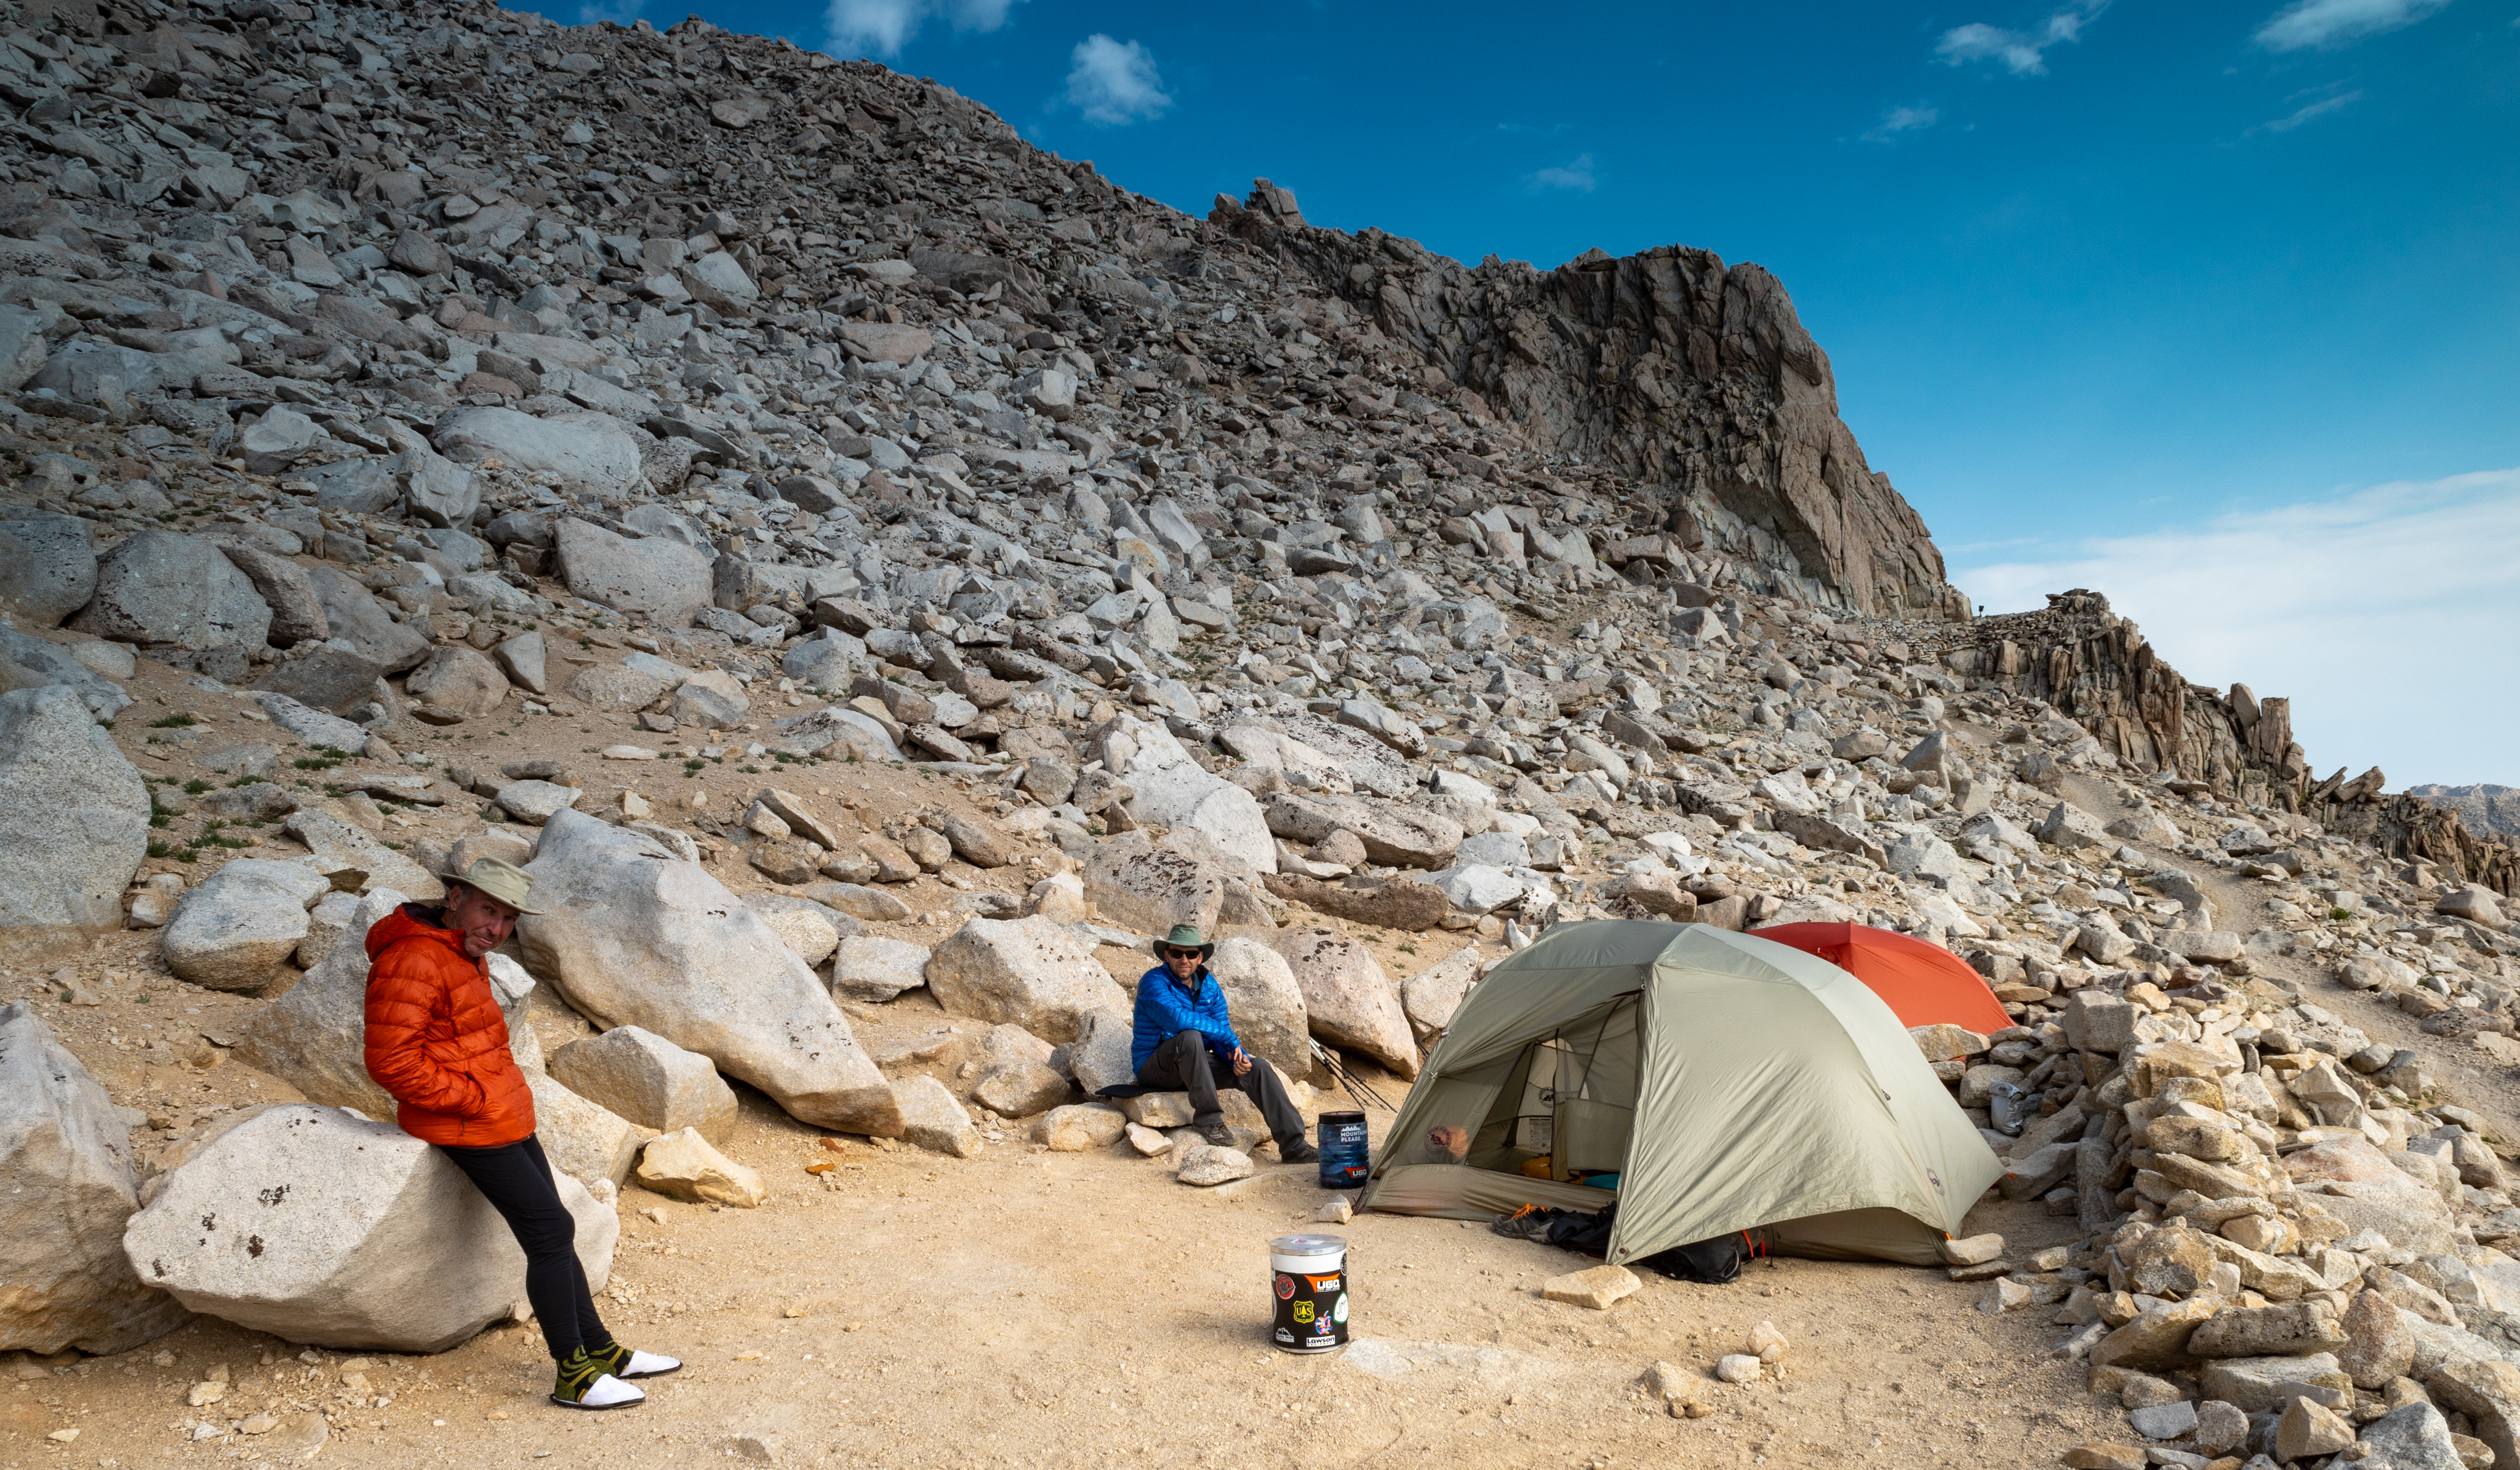 Dazzle campsite on Mt. Whitney